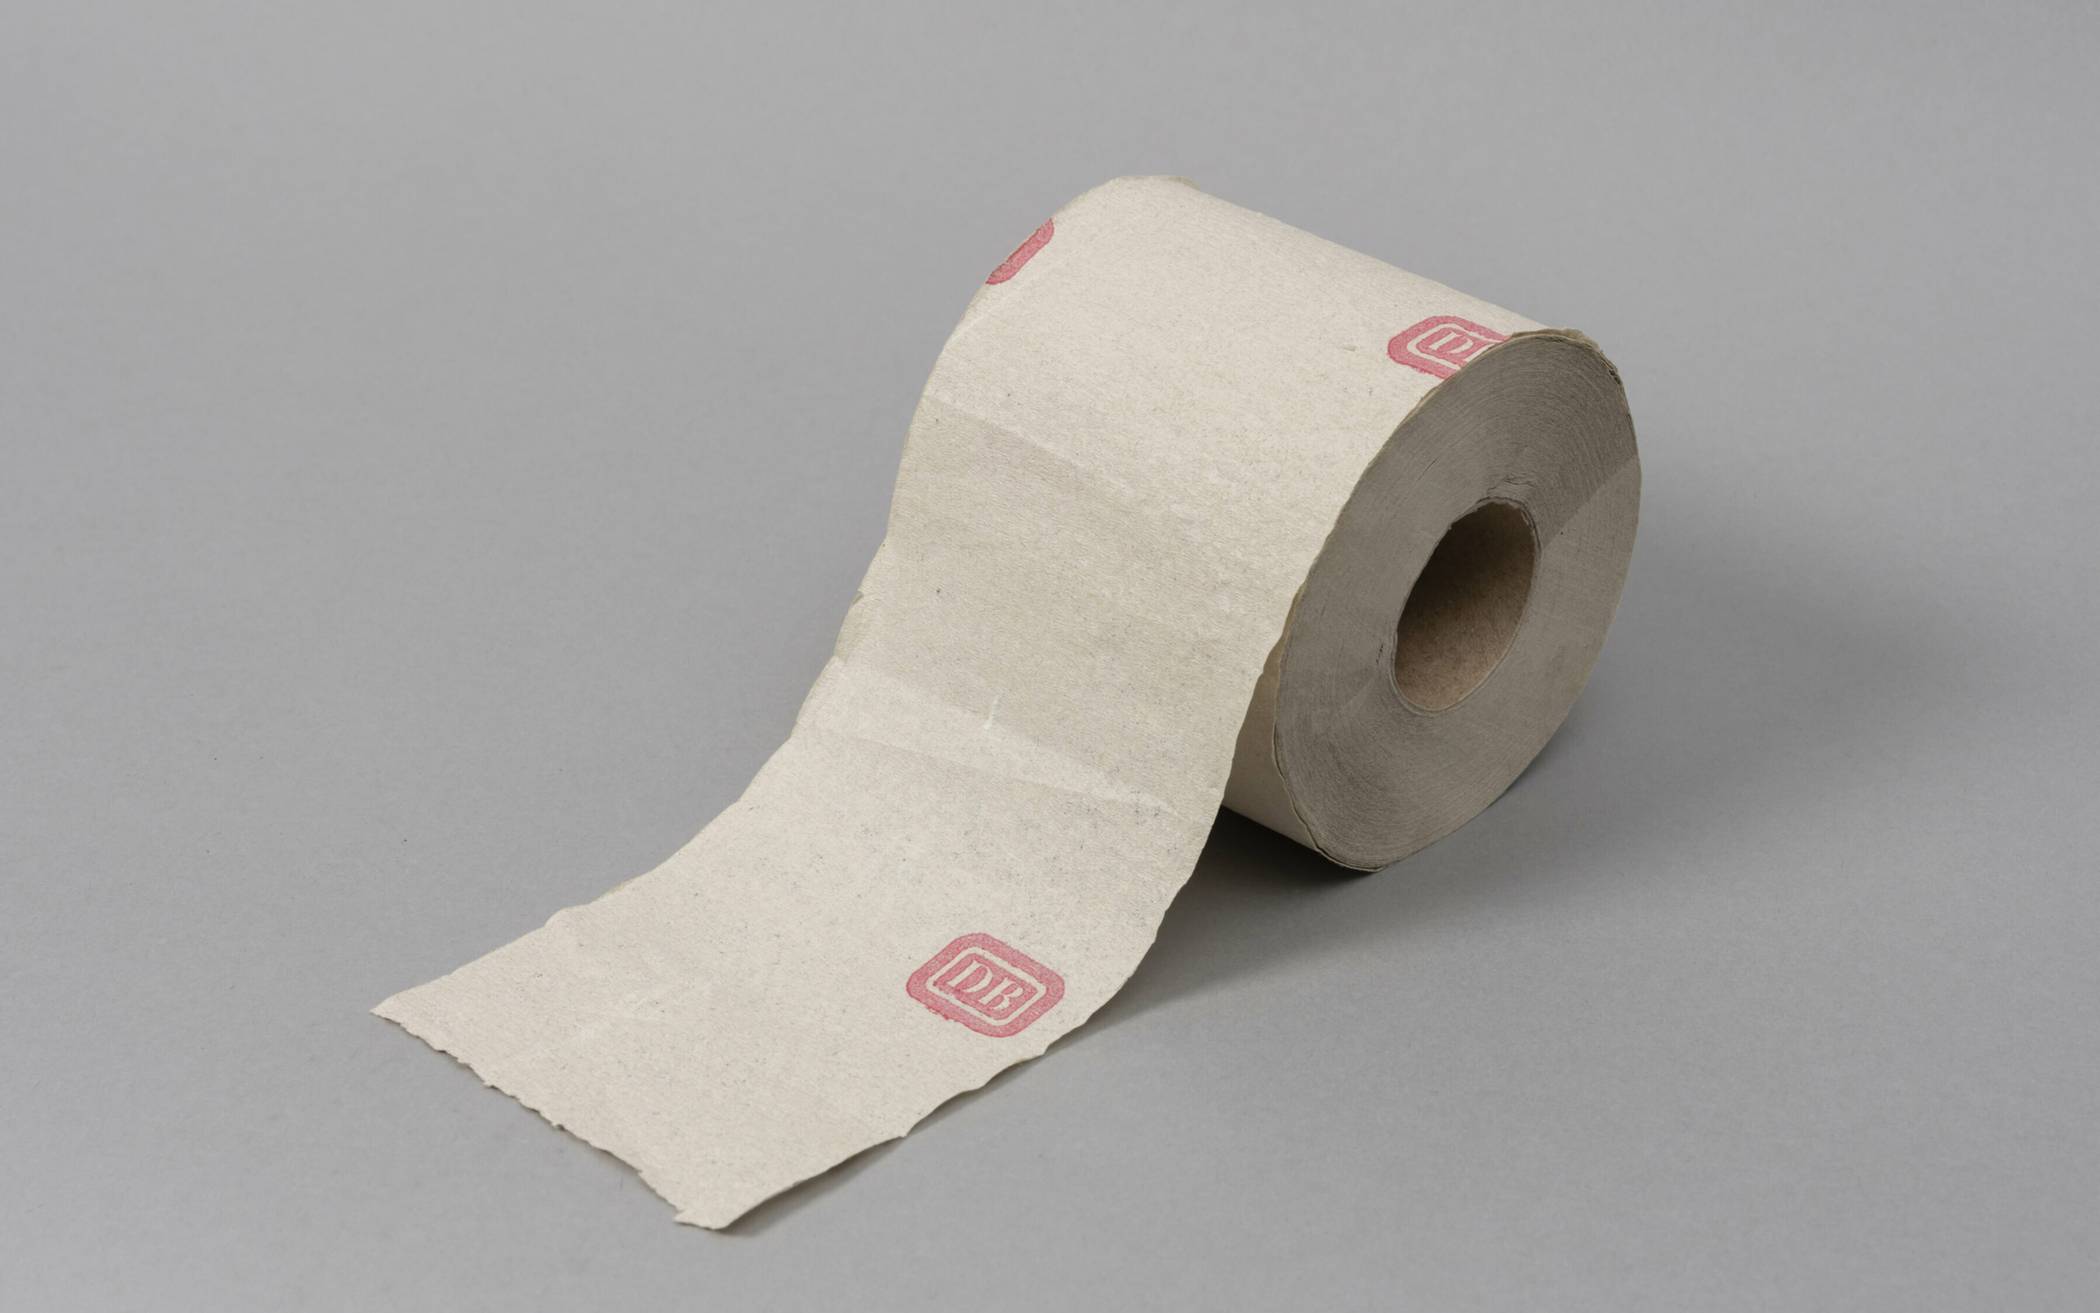 Toilettenpapier mit dem Signet der Deutschen